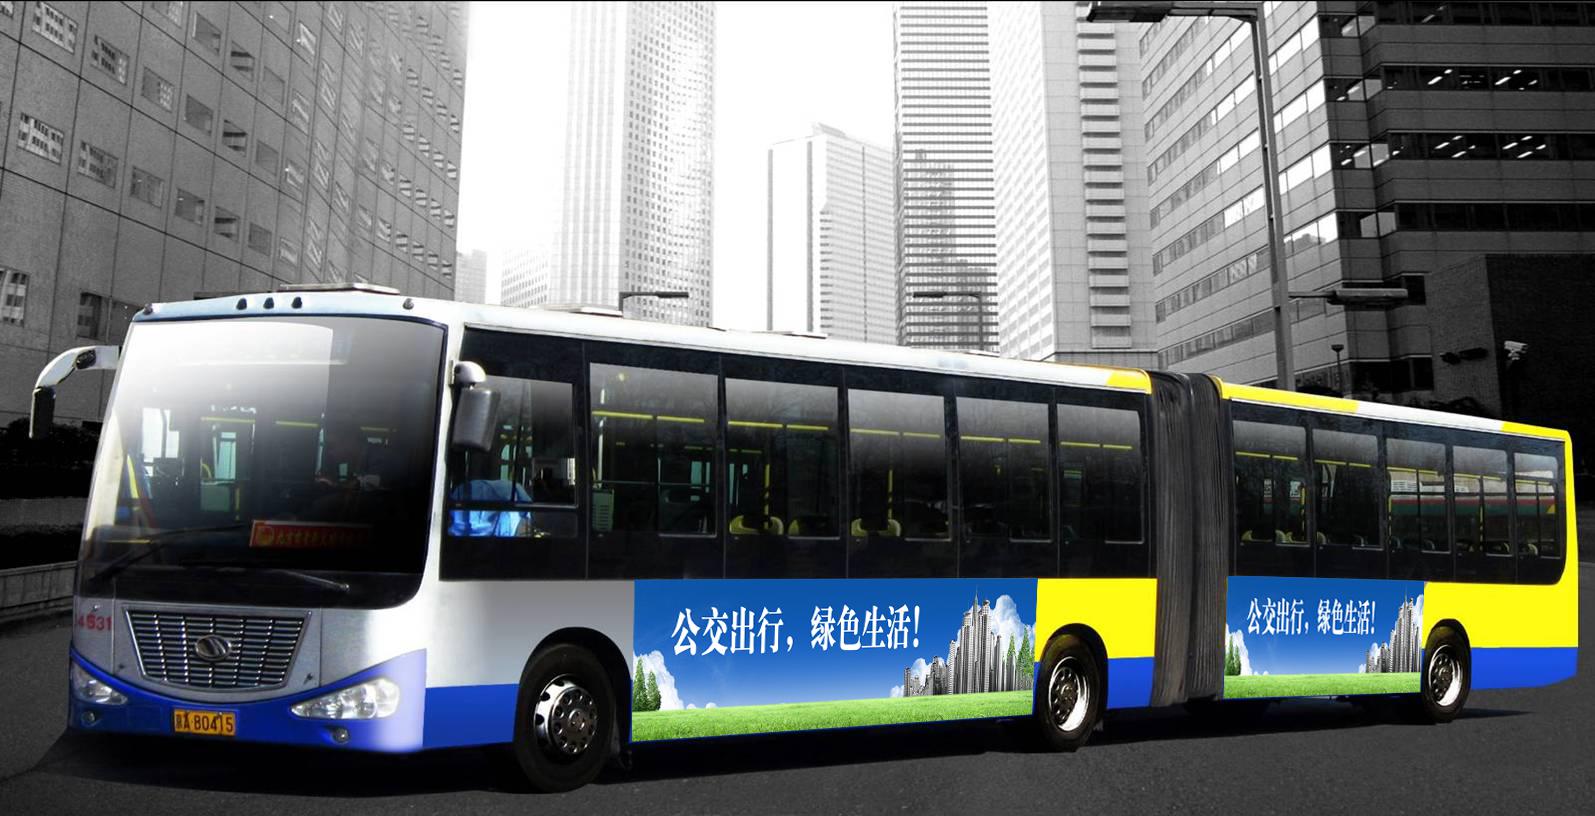 北京公交车身广告,央晟传媒